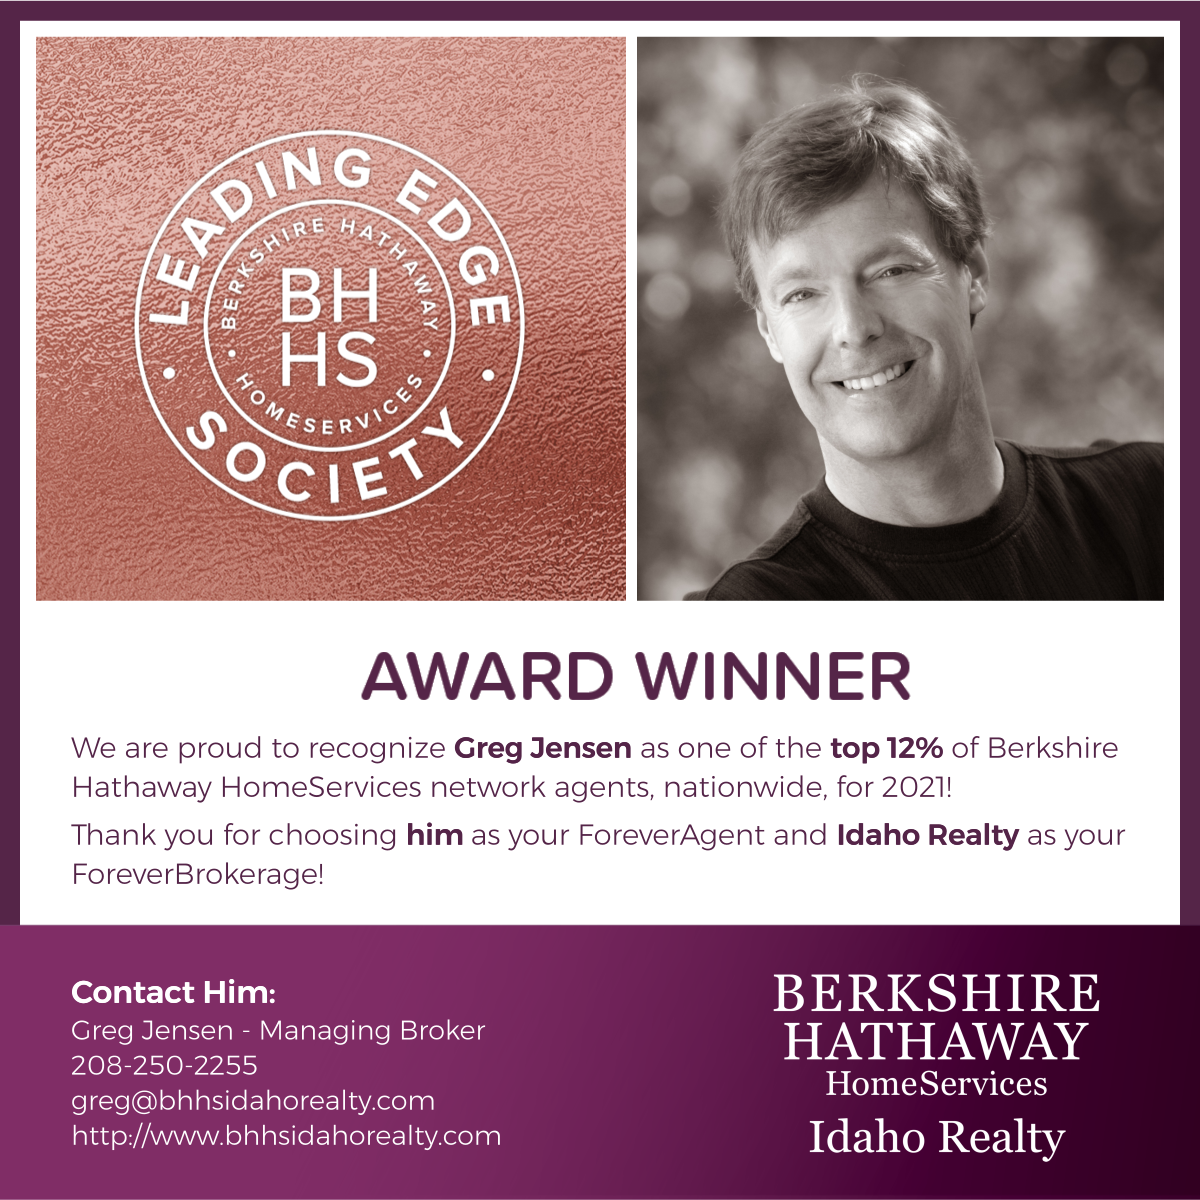 BHHS Threshold Award Winner - Leading Edge Society Award - Greg Jensen